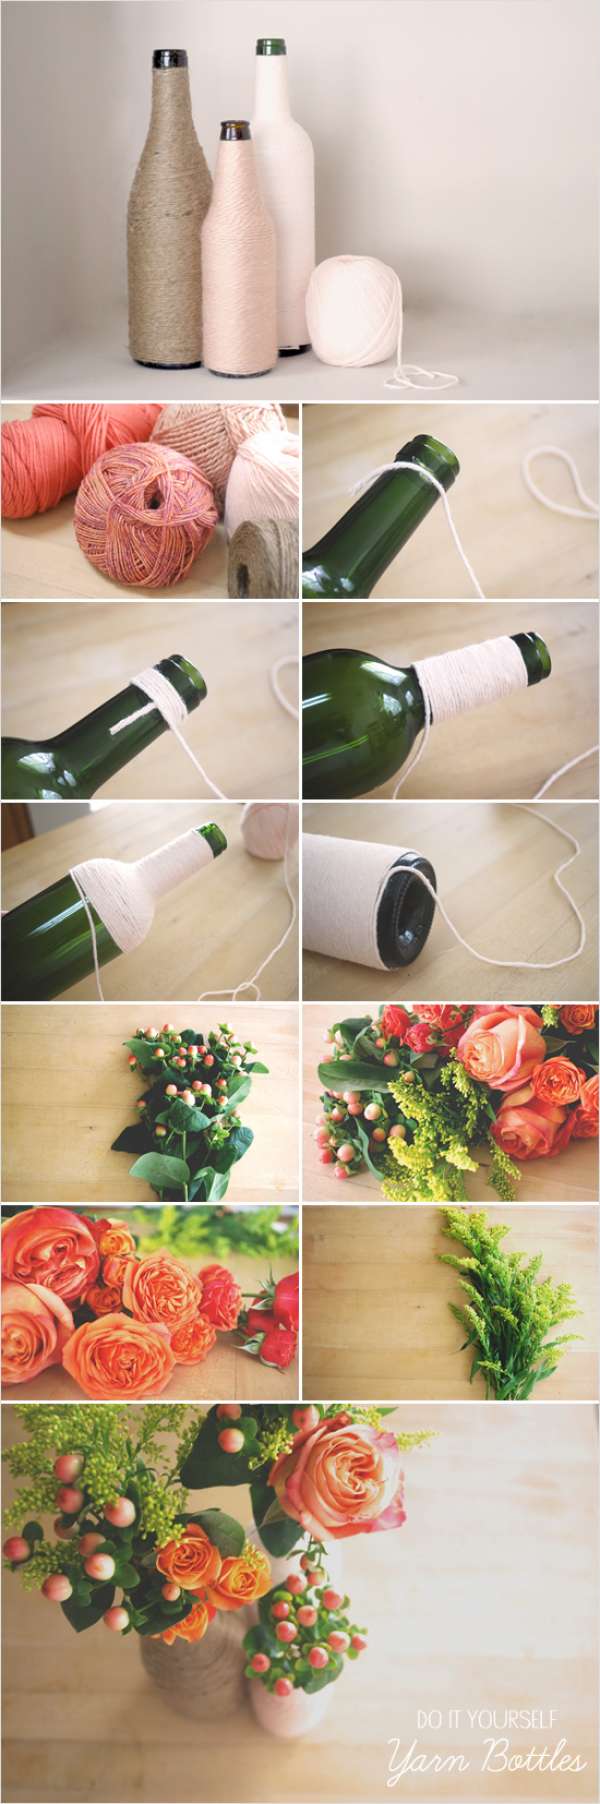 Vases à fleurs avec des bouteilles en verre décorées de fils